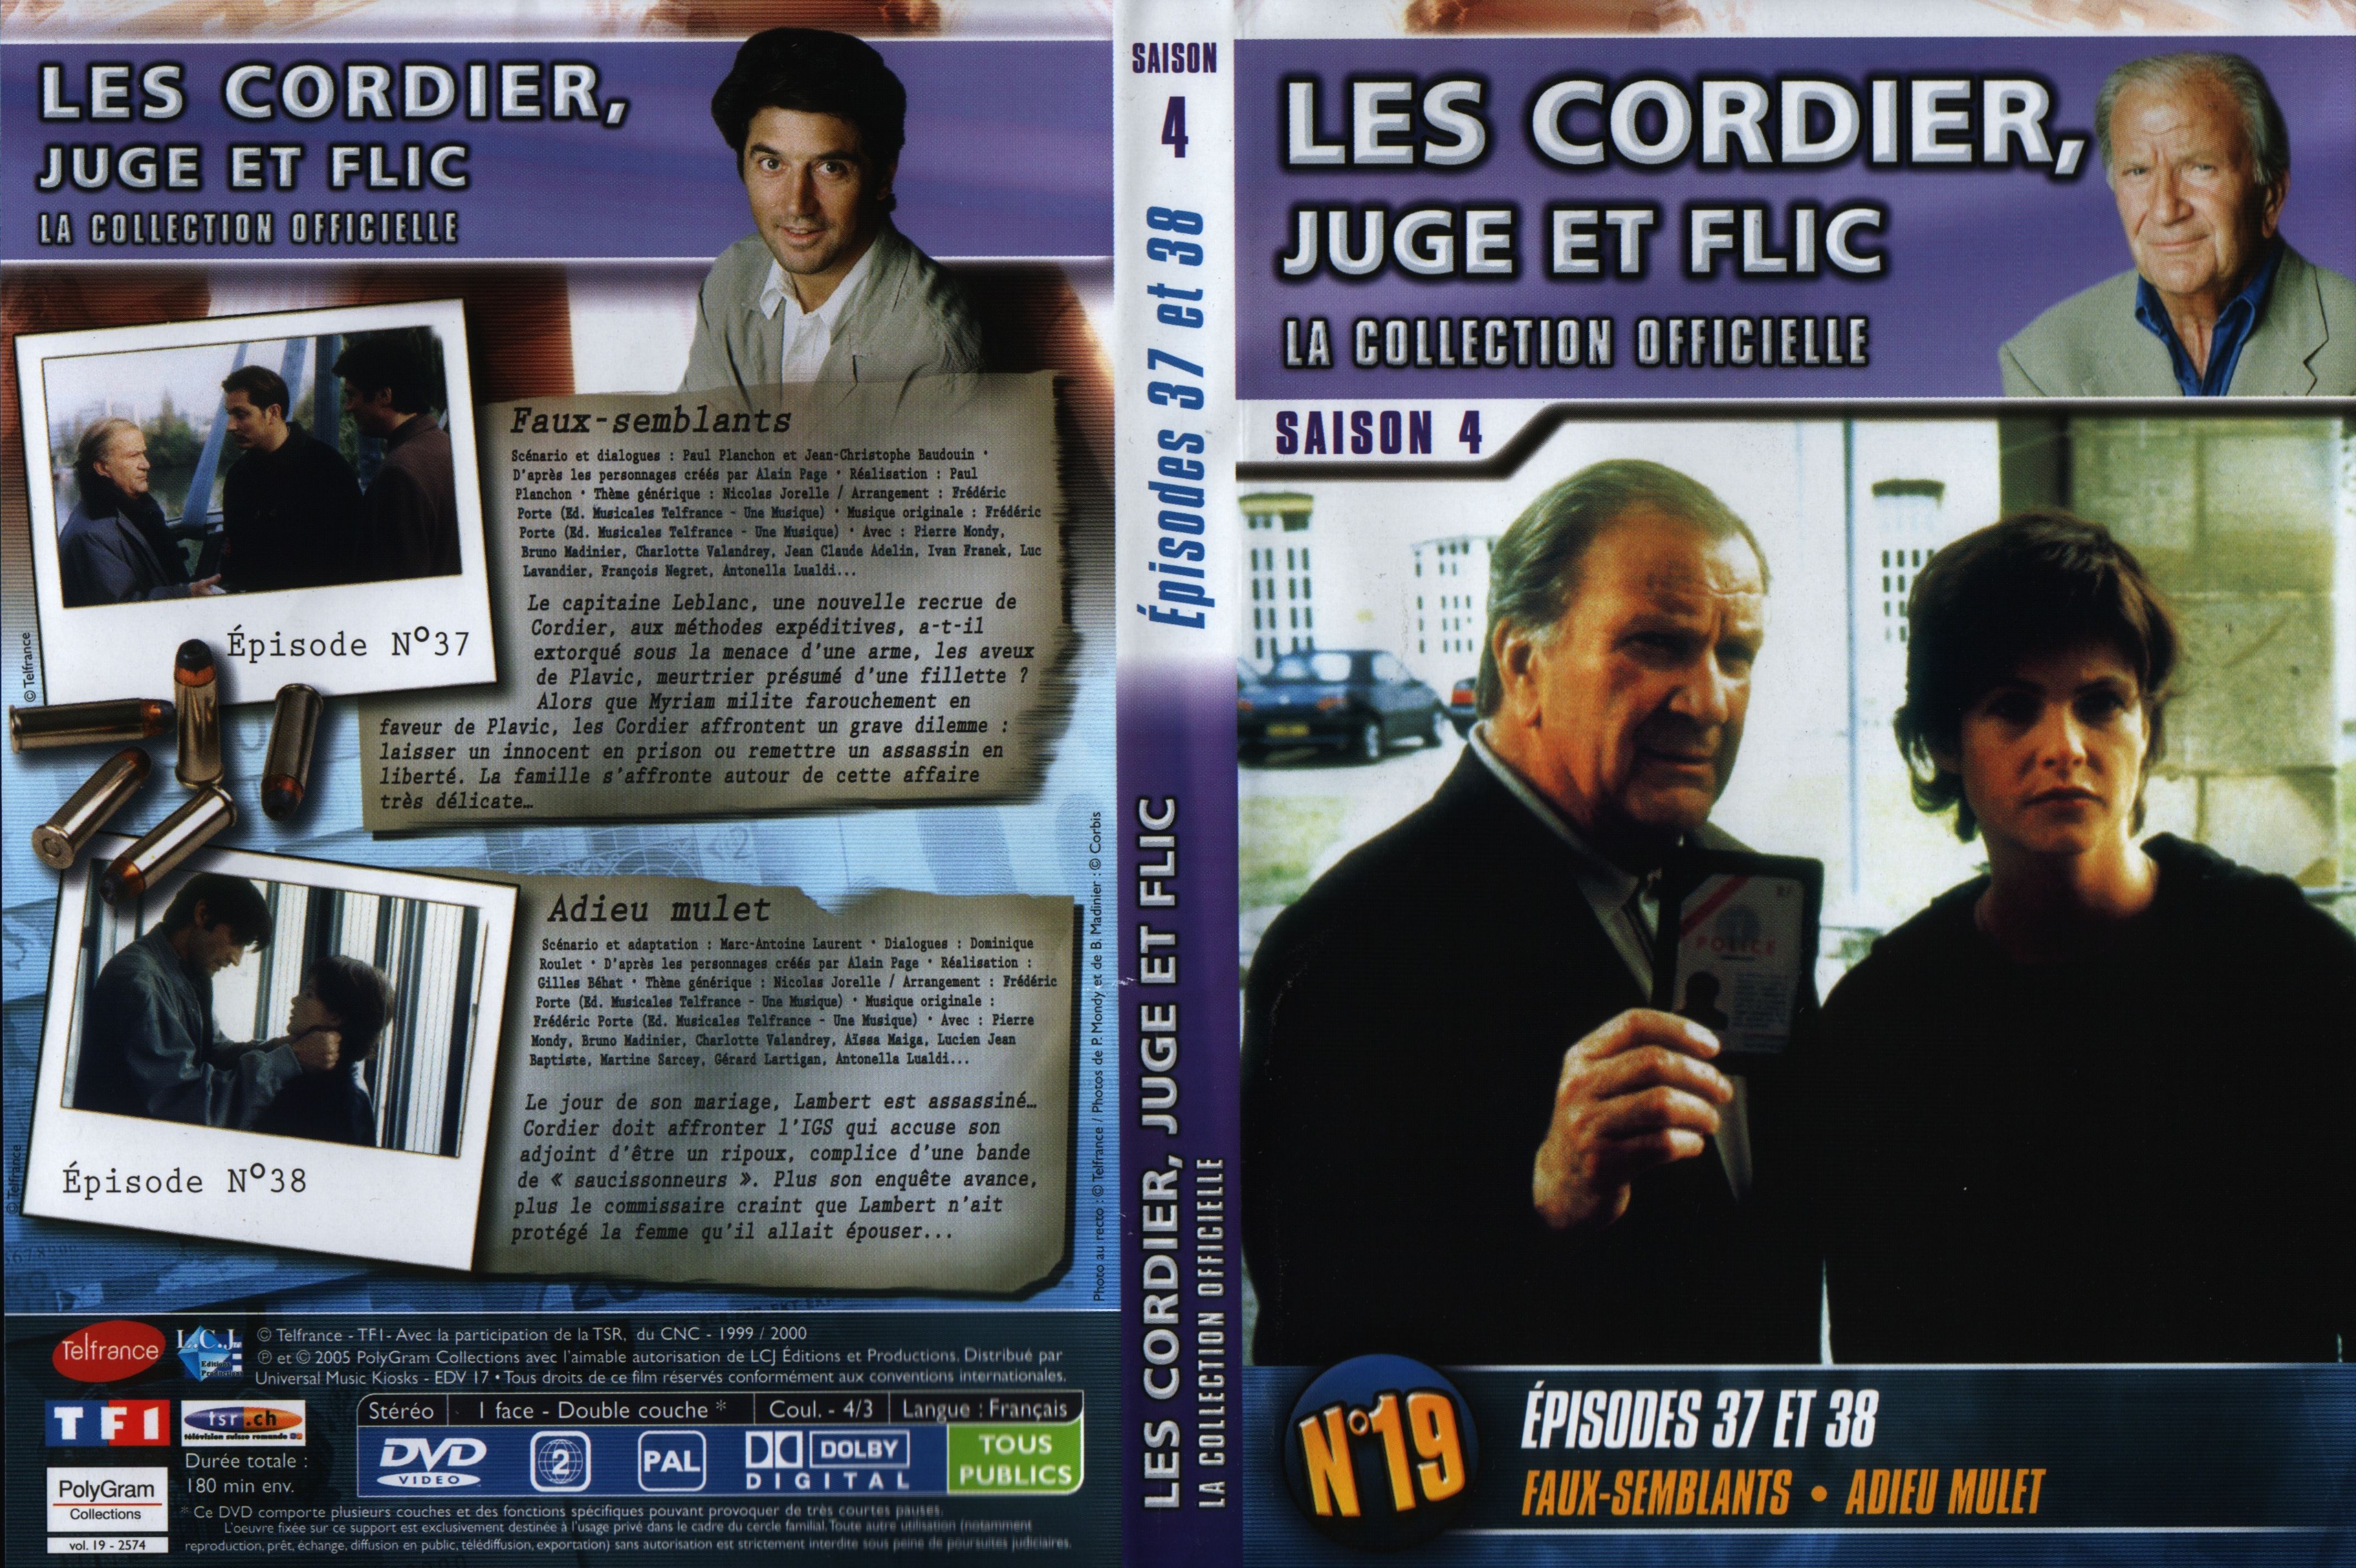 Jaquette DVD Les cordier juge et flic Saison 4 vol 19